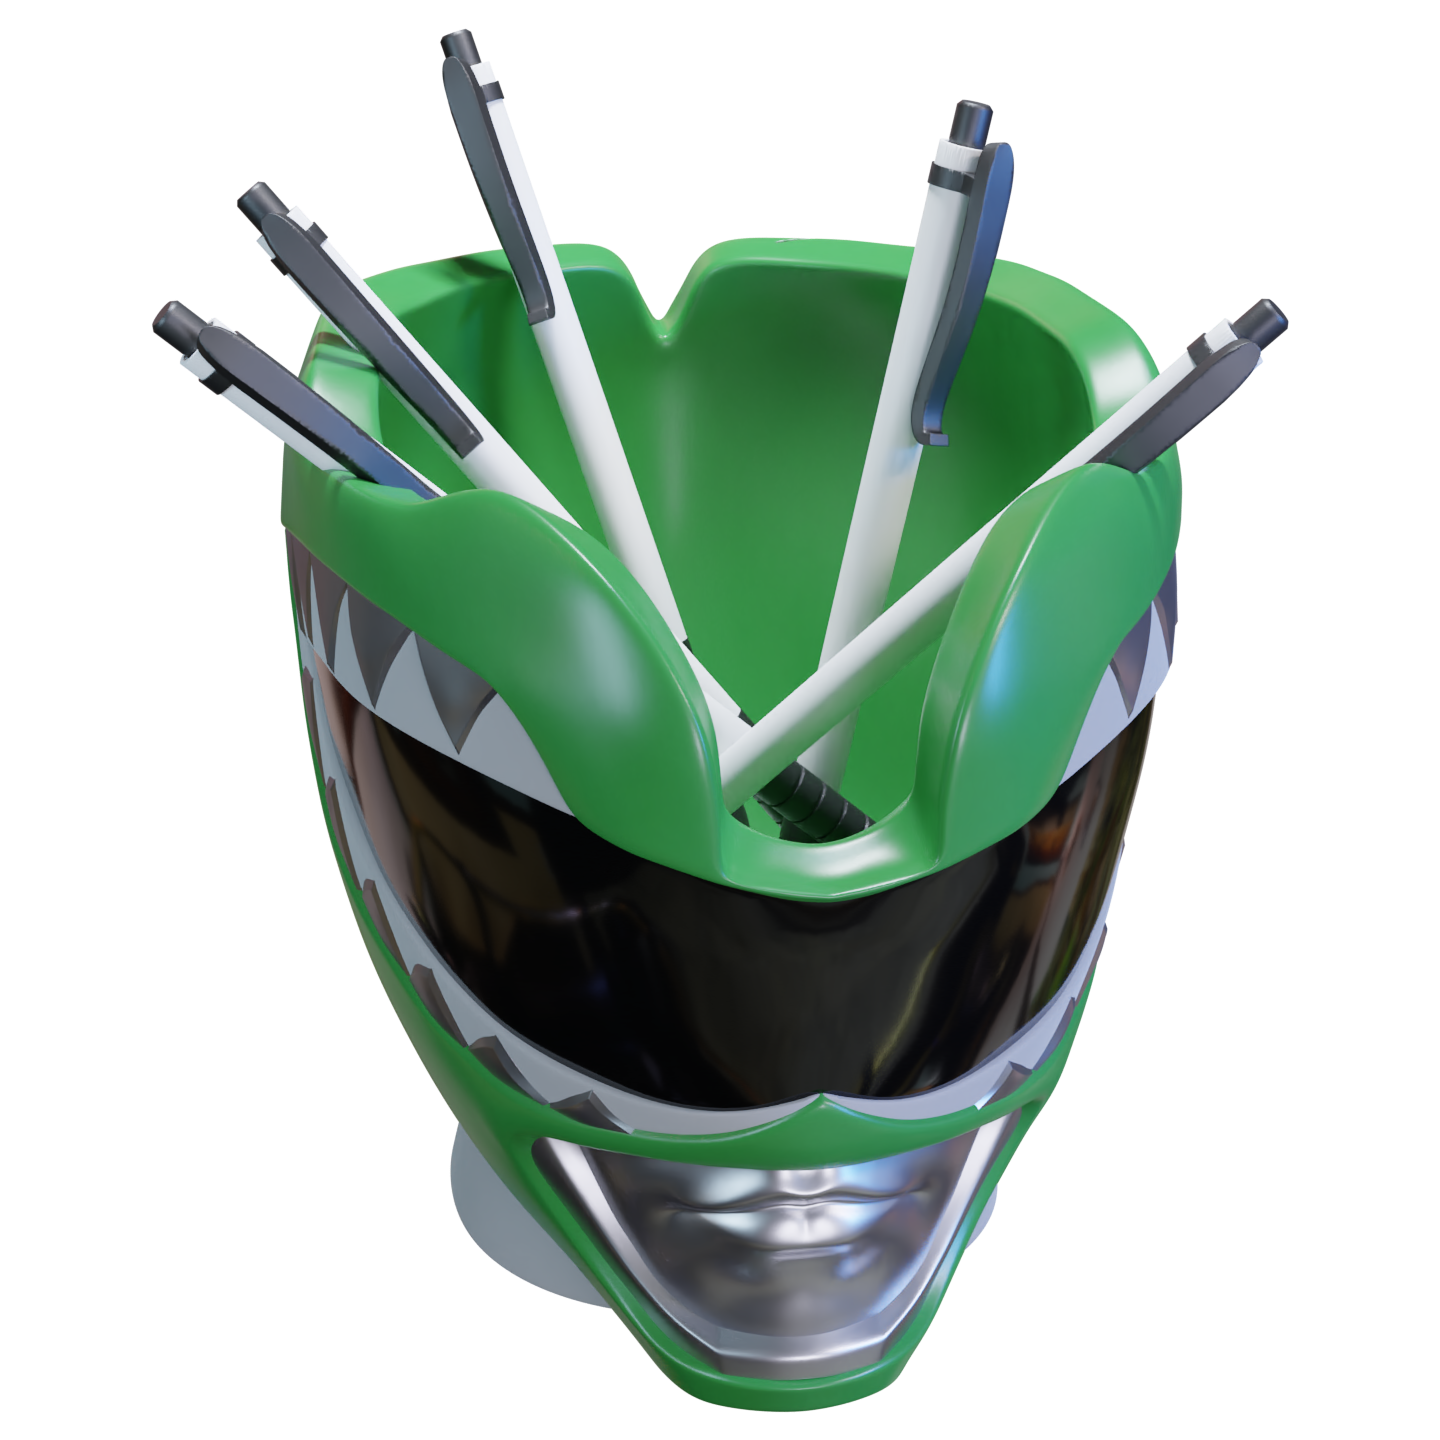 Power Rangers Green Ranger Helmet Pen Holder - Available 4th Quarter 2022 - Icon Heroes 